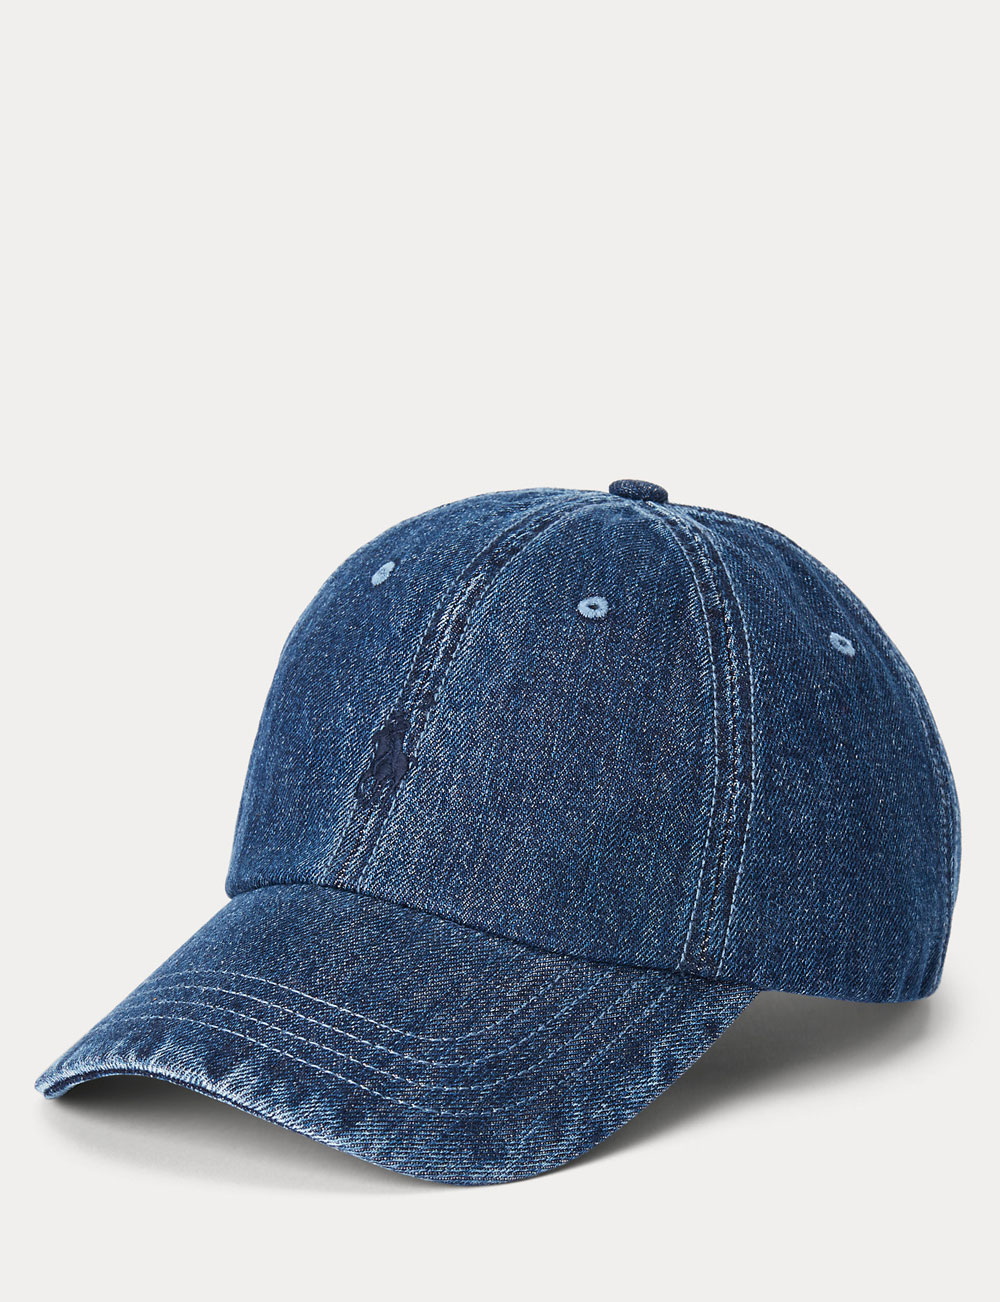 Accessoire en jean, la casquette Ralph Lauren